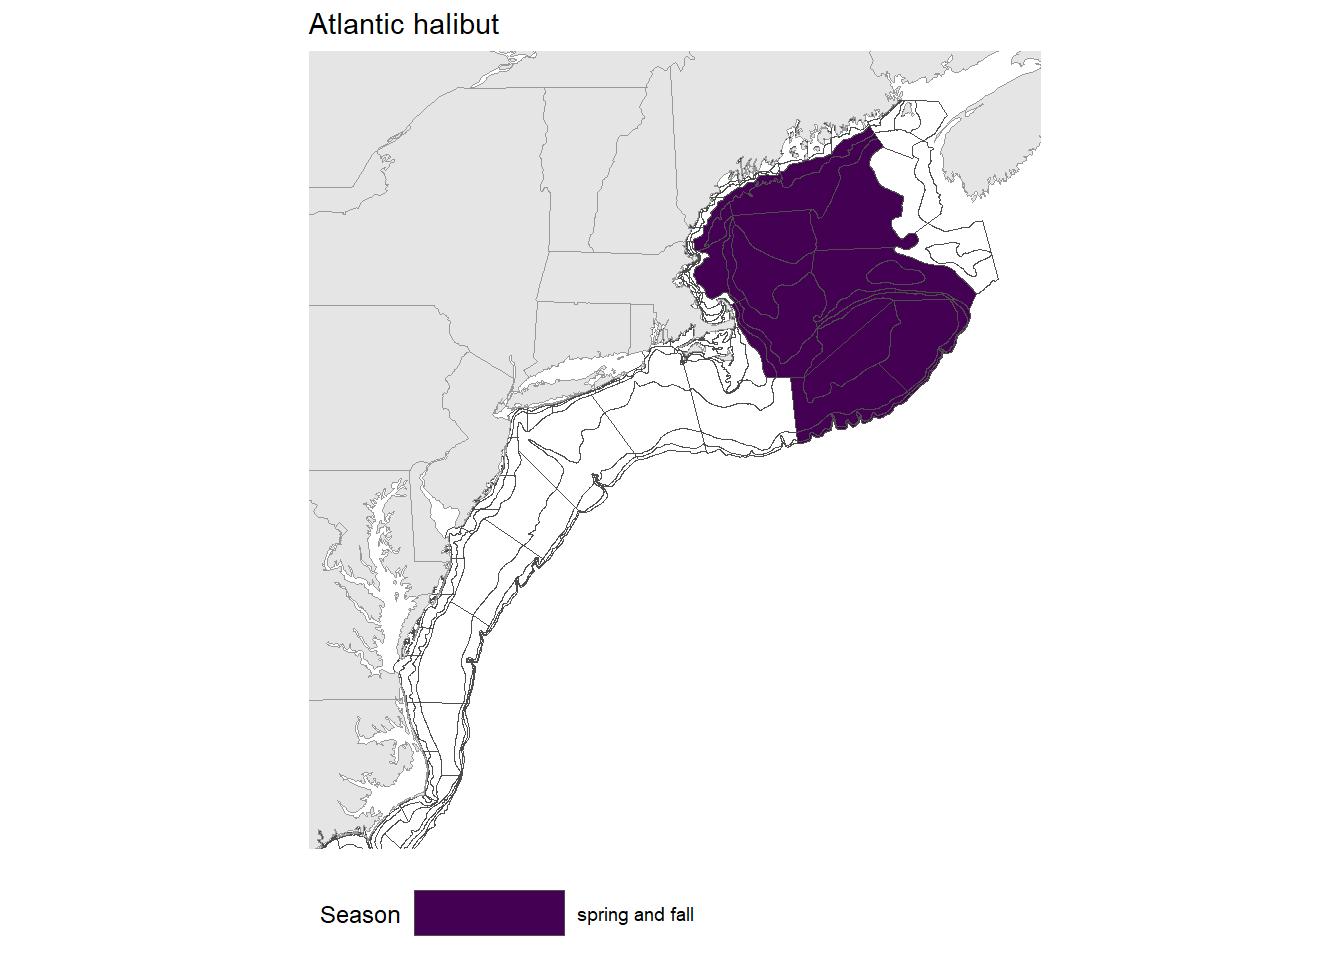 Strata map for the Atlantic halibut (Hippoglossus hippoglossus) stock on the NE shelf.